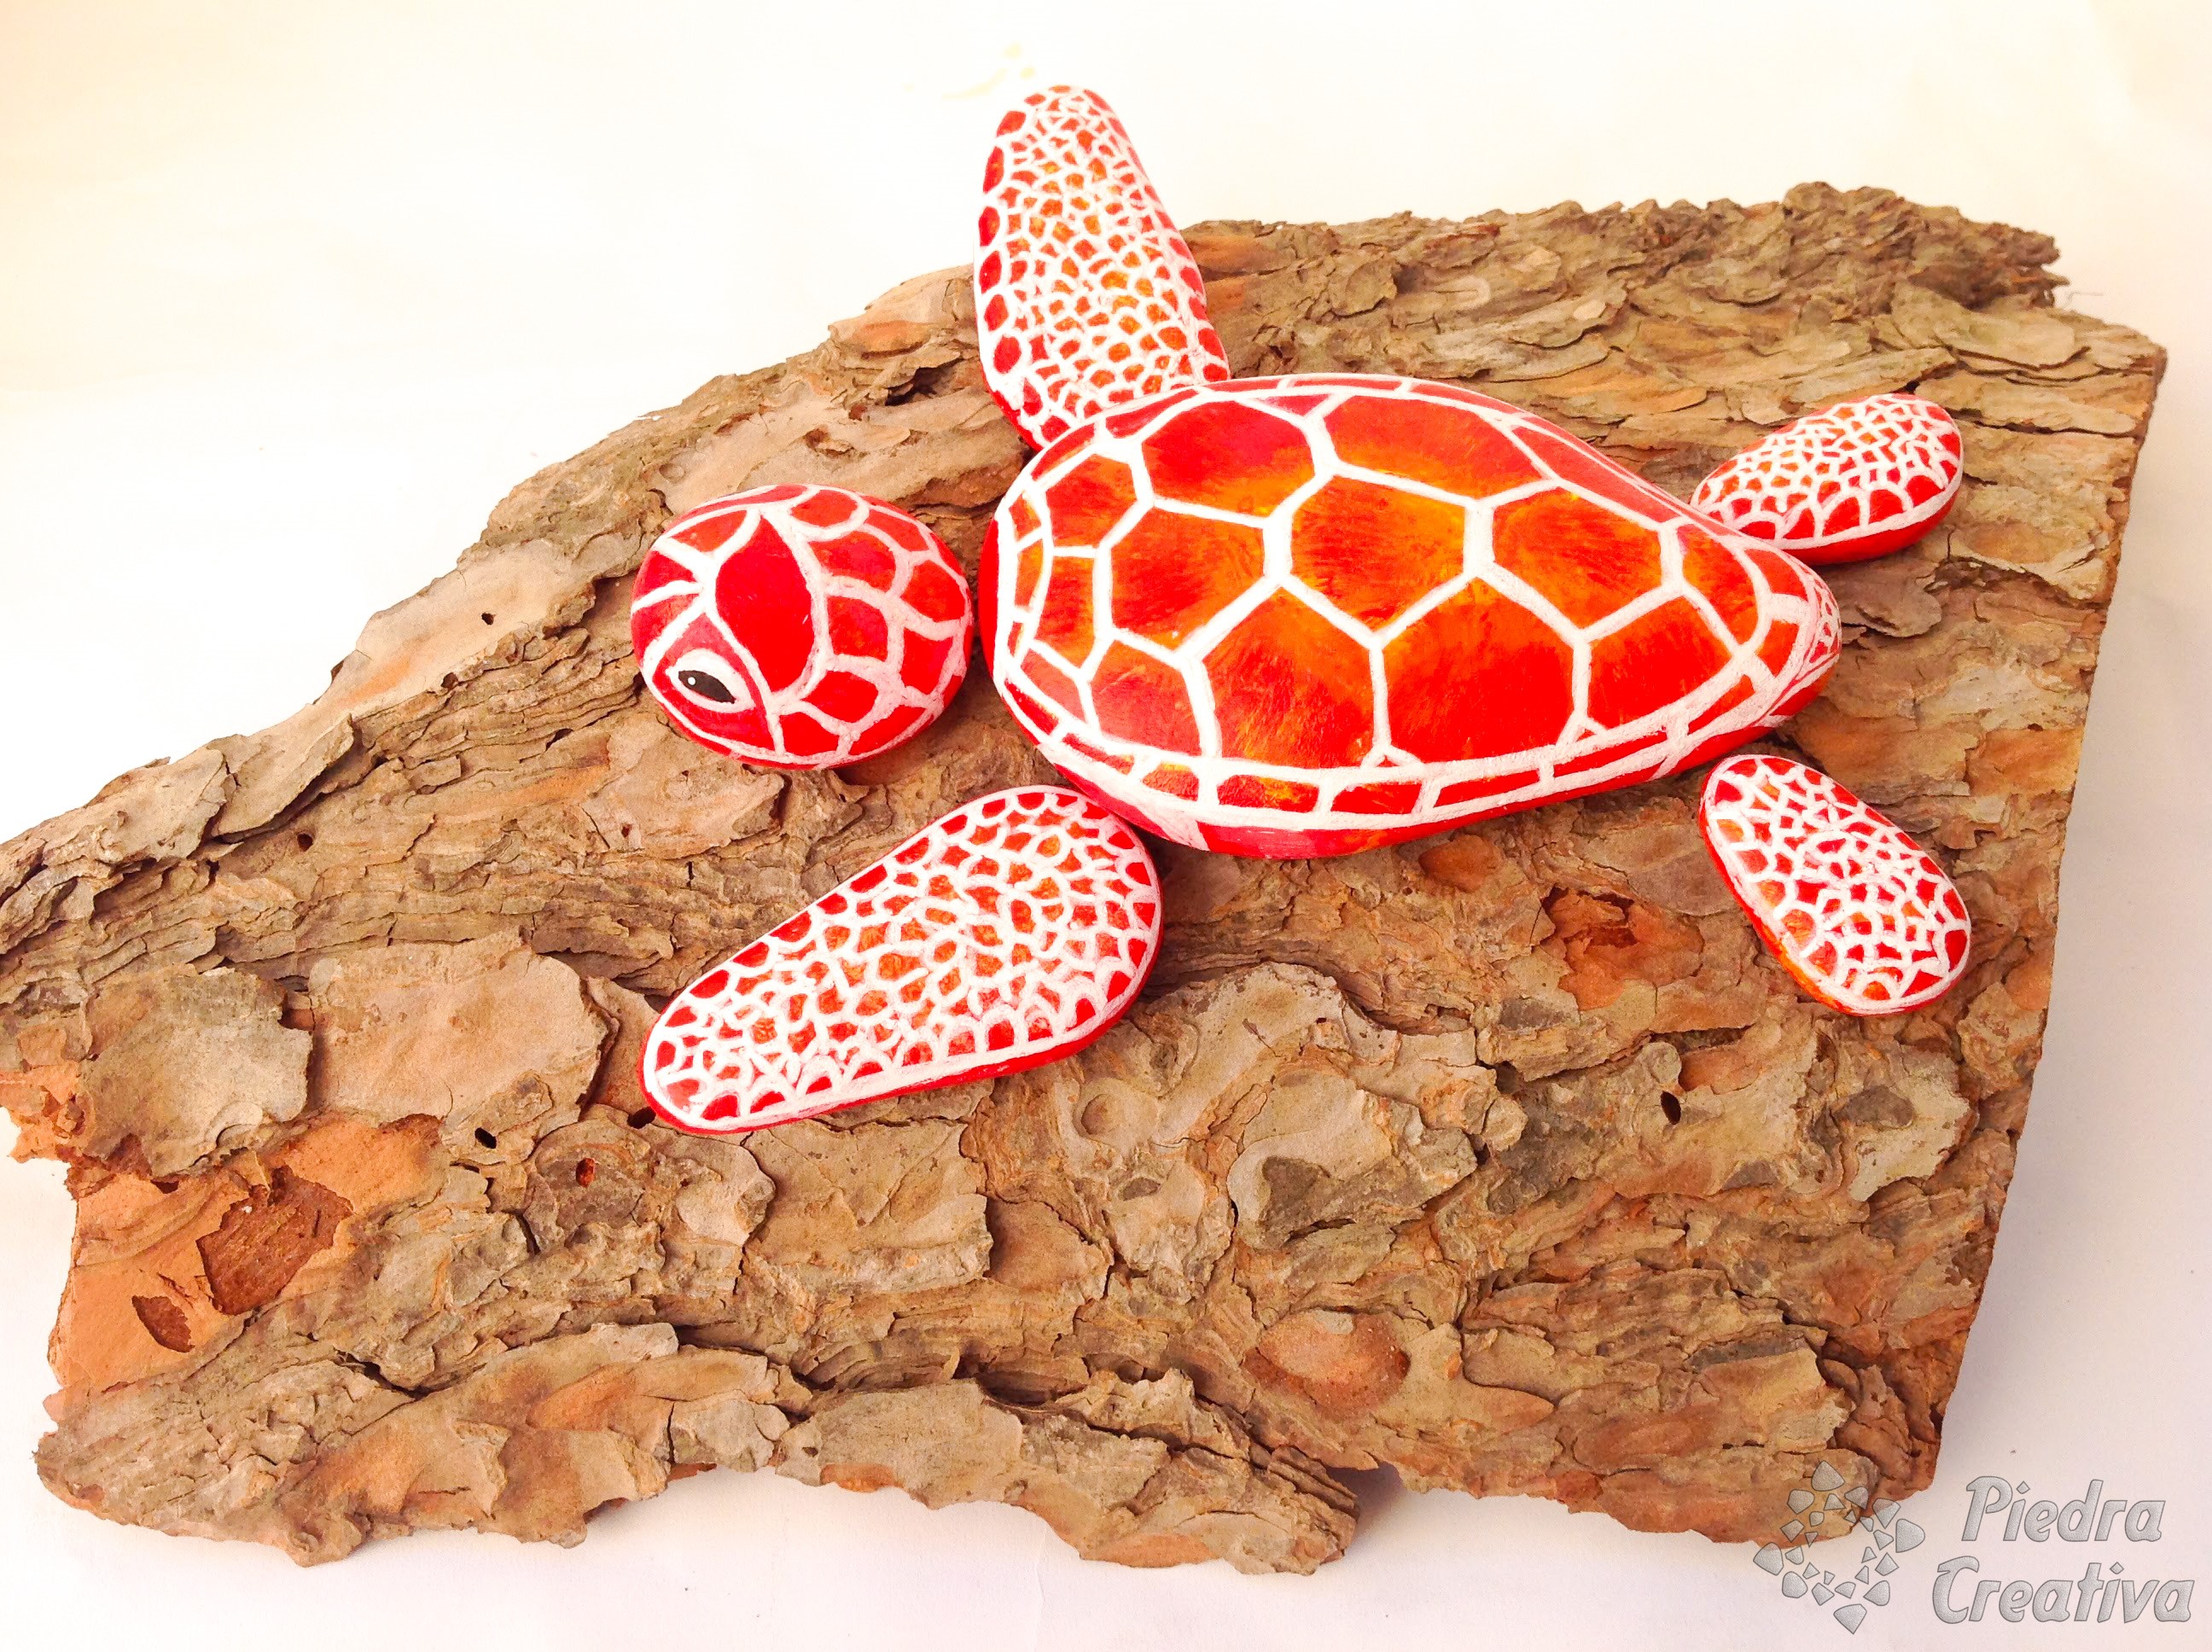 Como hacer una tortuga con piedras pintadas ???? PiedraCreativa ????